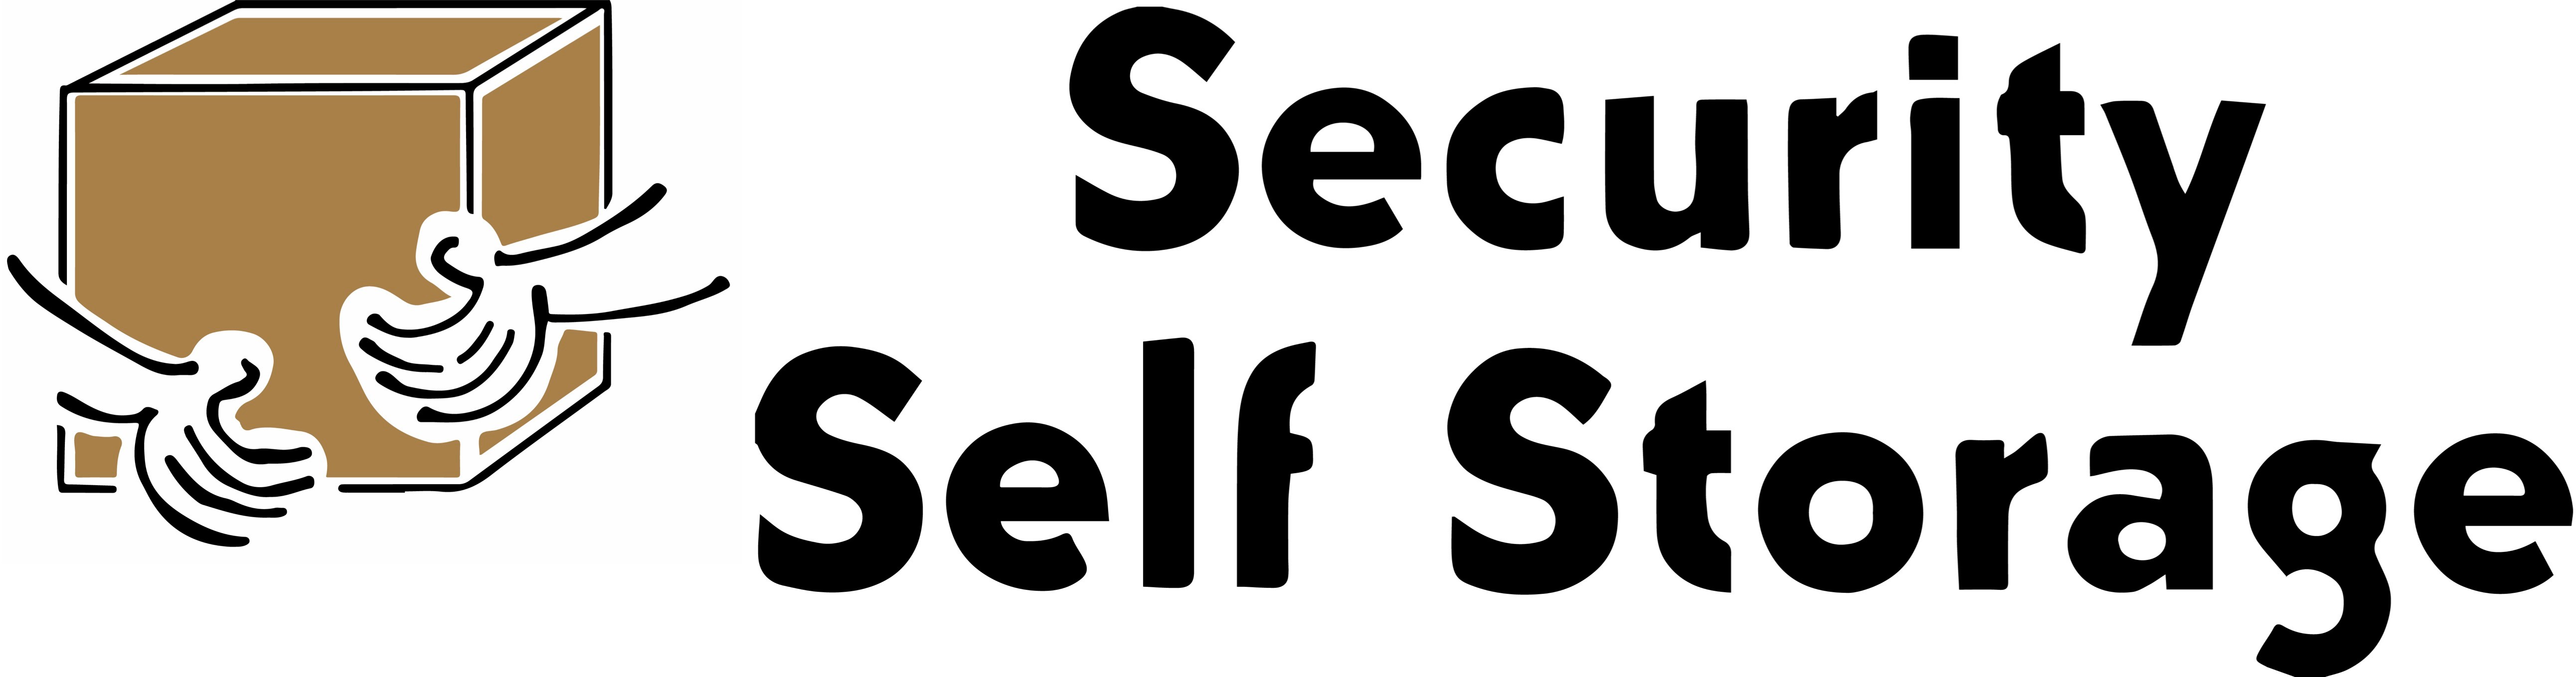 0Security Self Storage.jpg